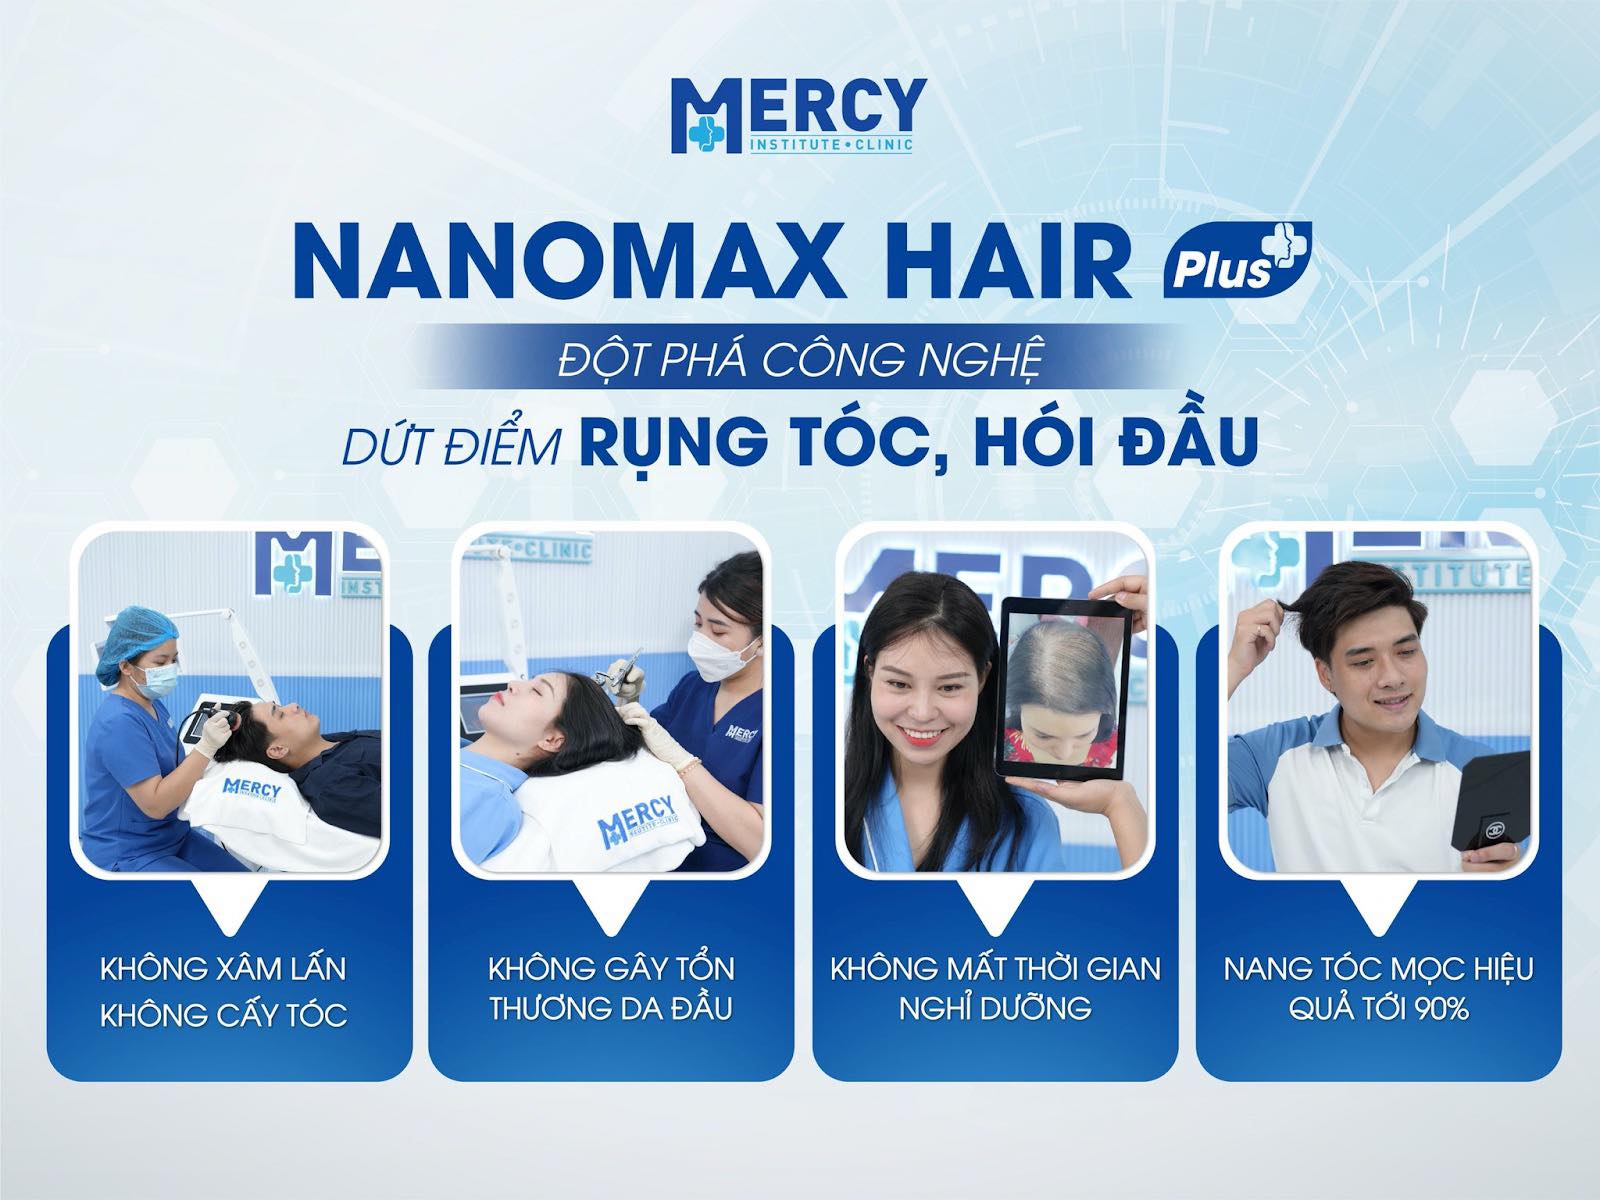 Nanomax Hair Plus